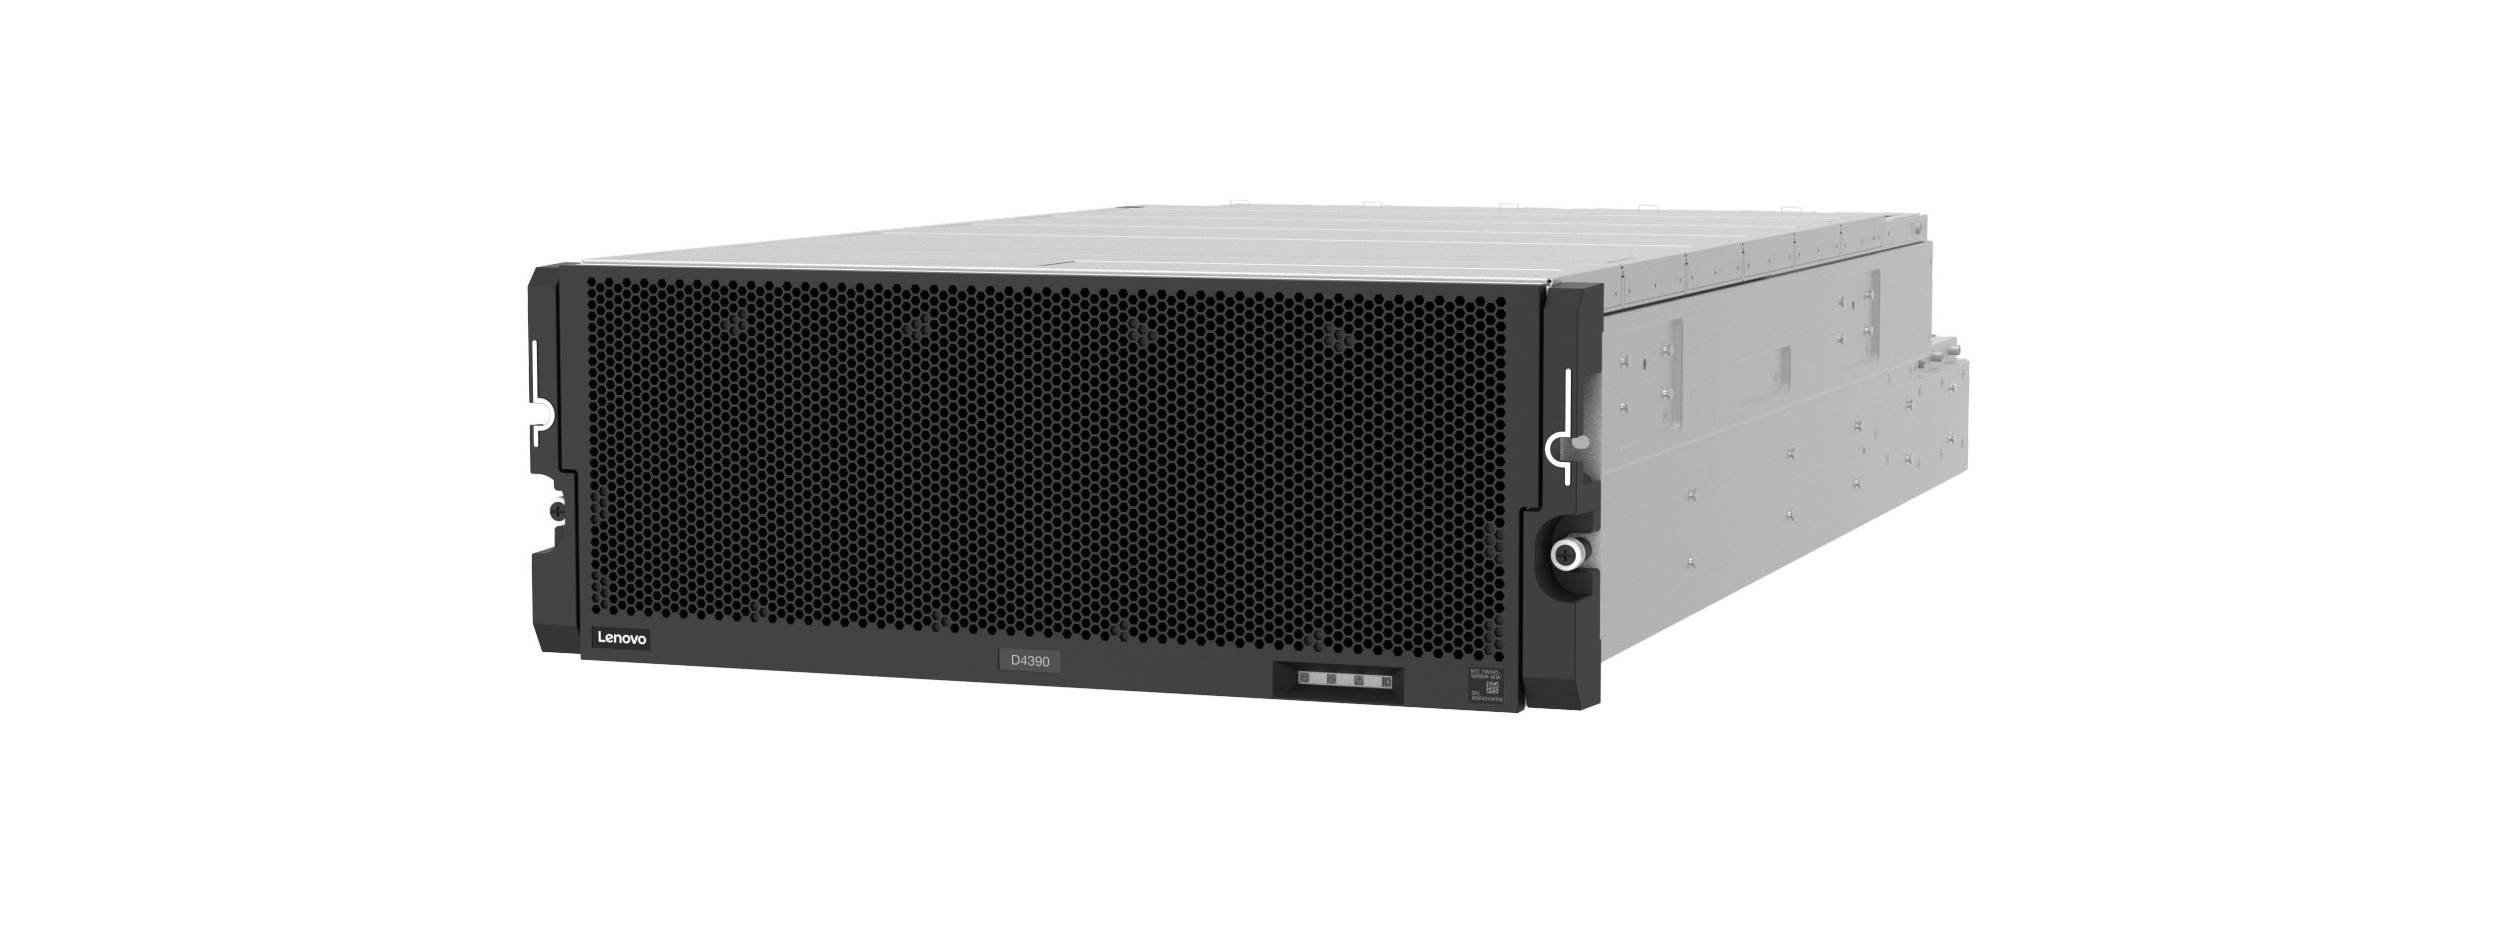 Lenovo представила шасси ThinkSystem D4390 для СХД высокой плотности